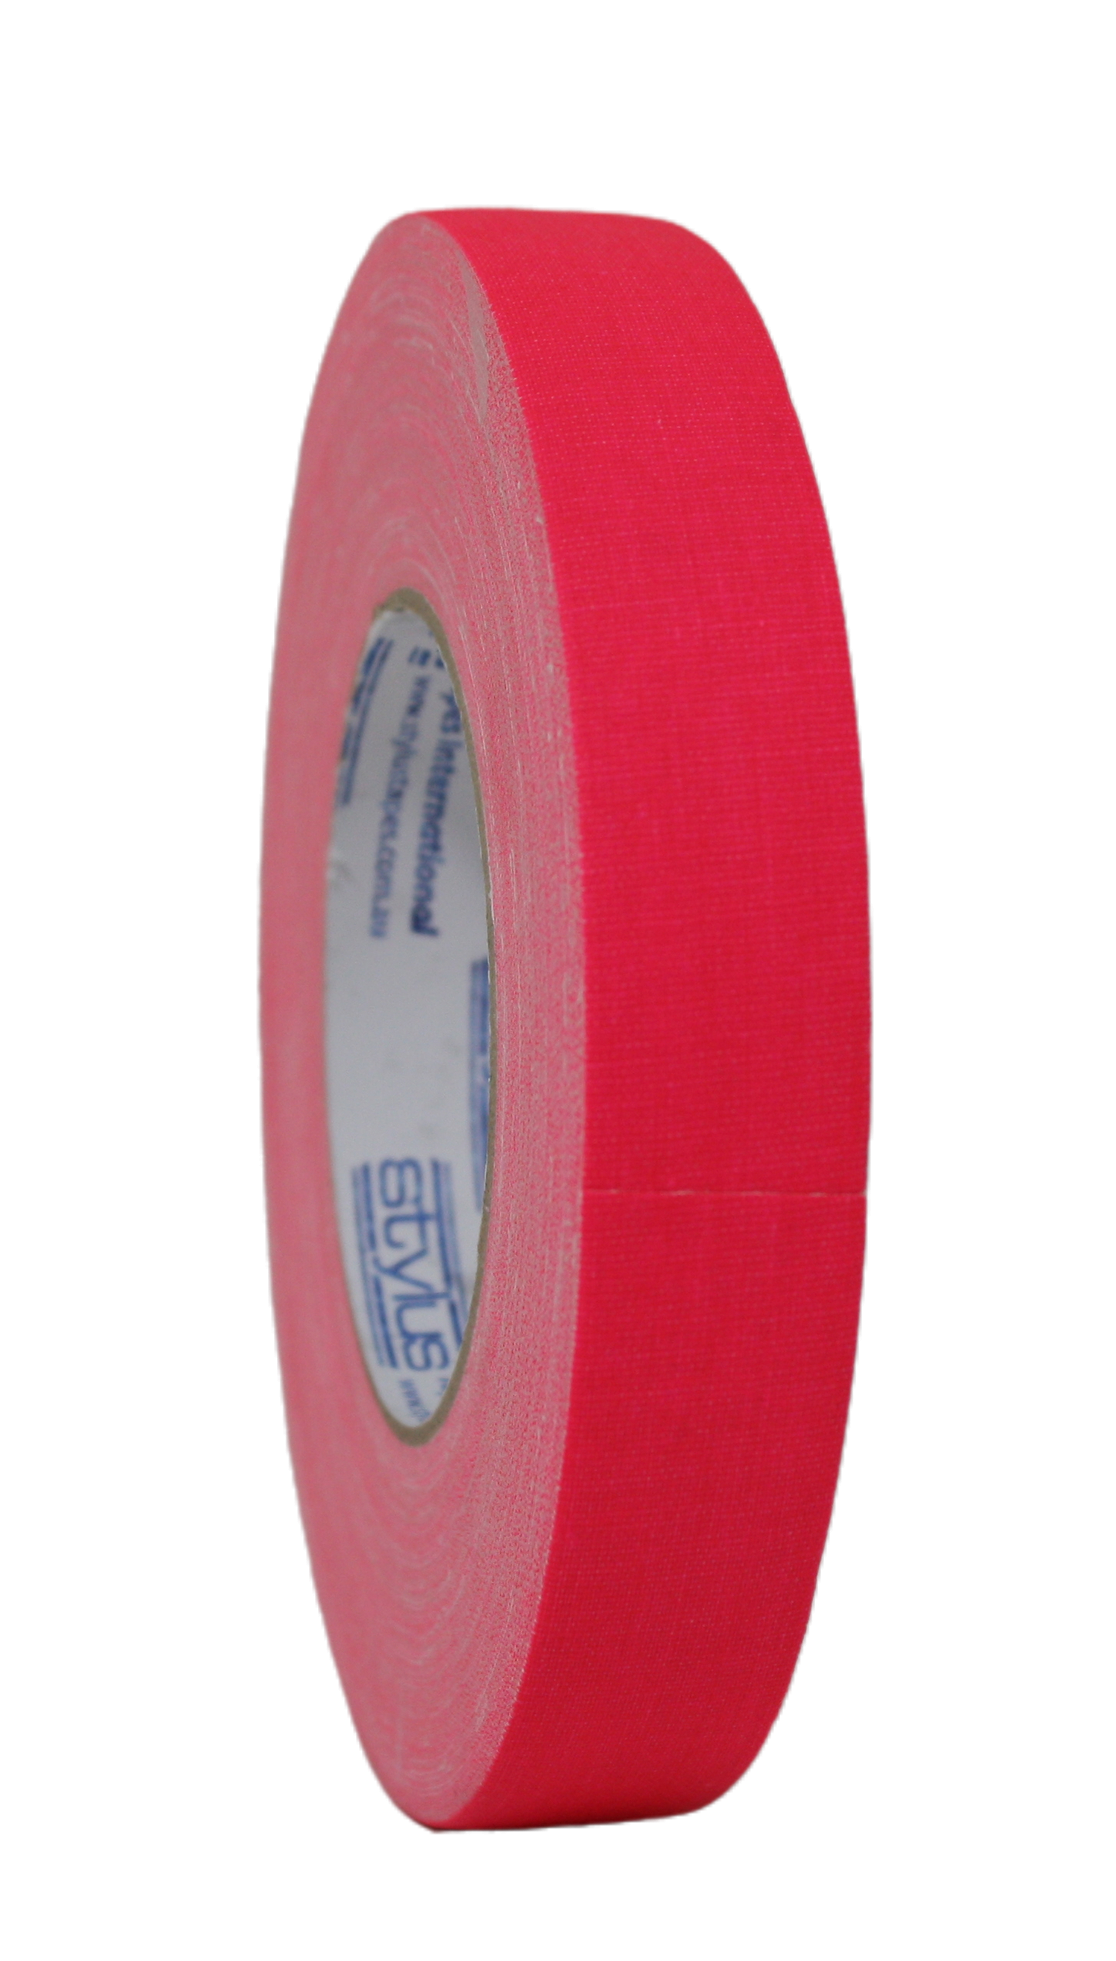 Styluss Fluorescent Gaffer Tape, 1" Pink, side view